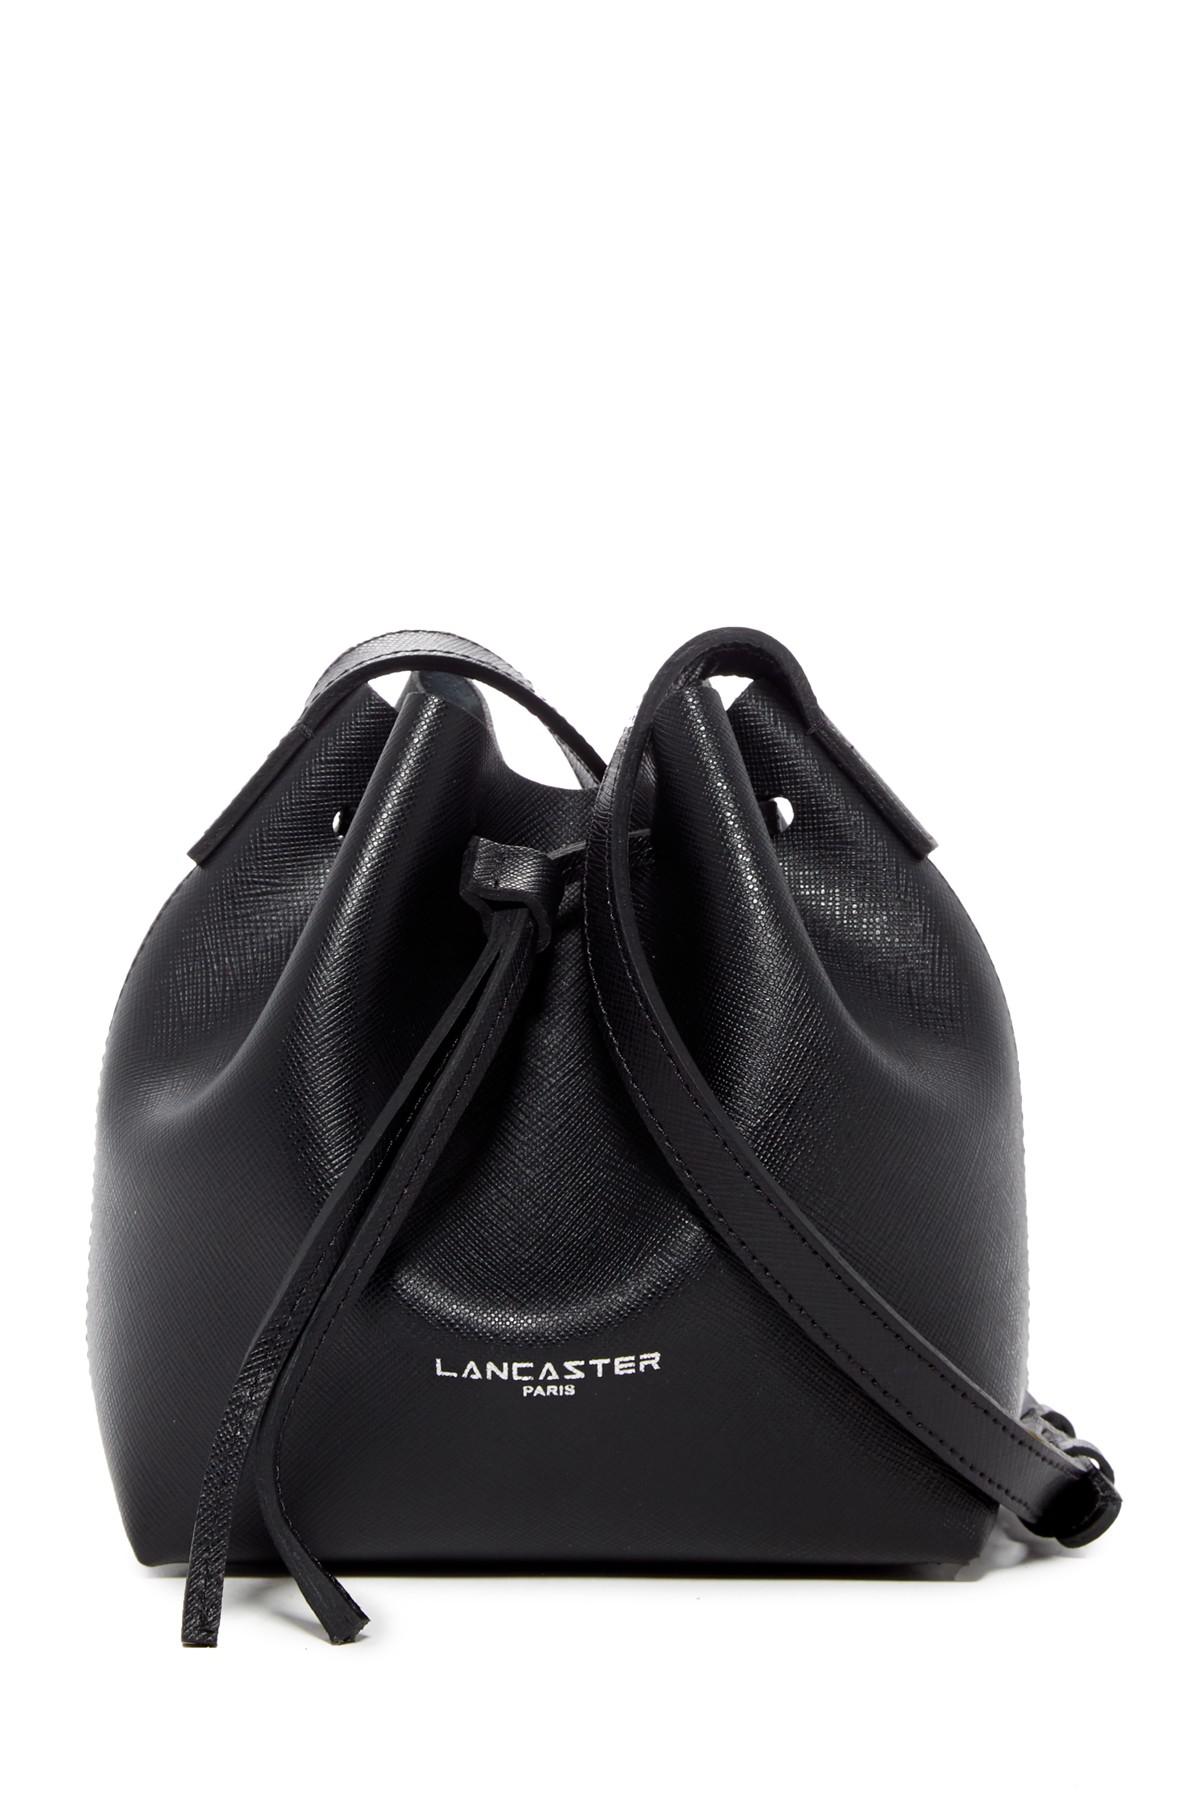 lancaster paris pur saffiano leather mini bucket bag